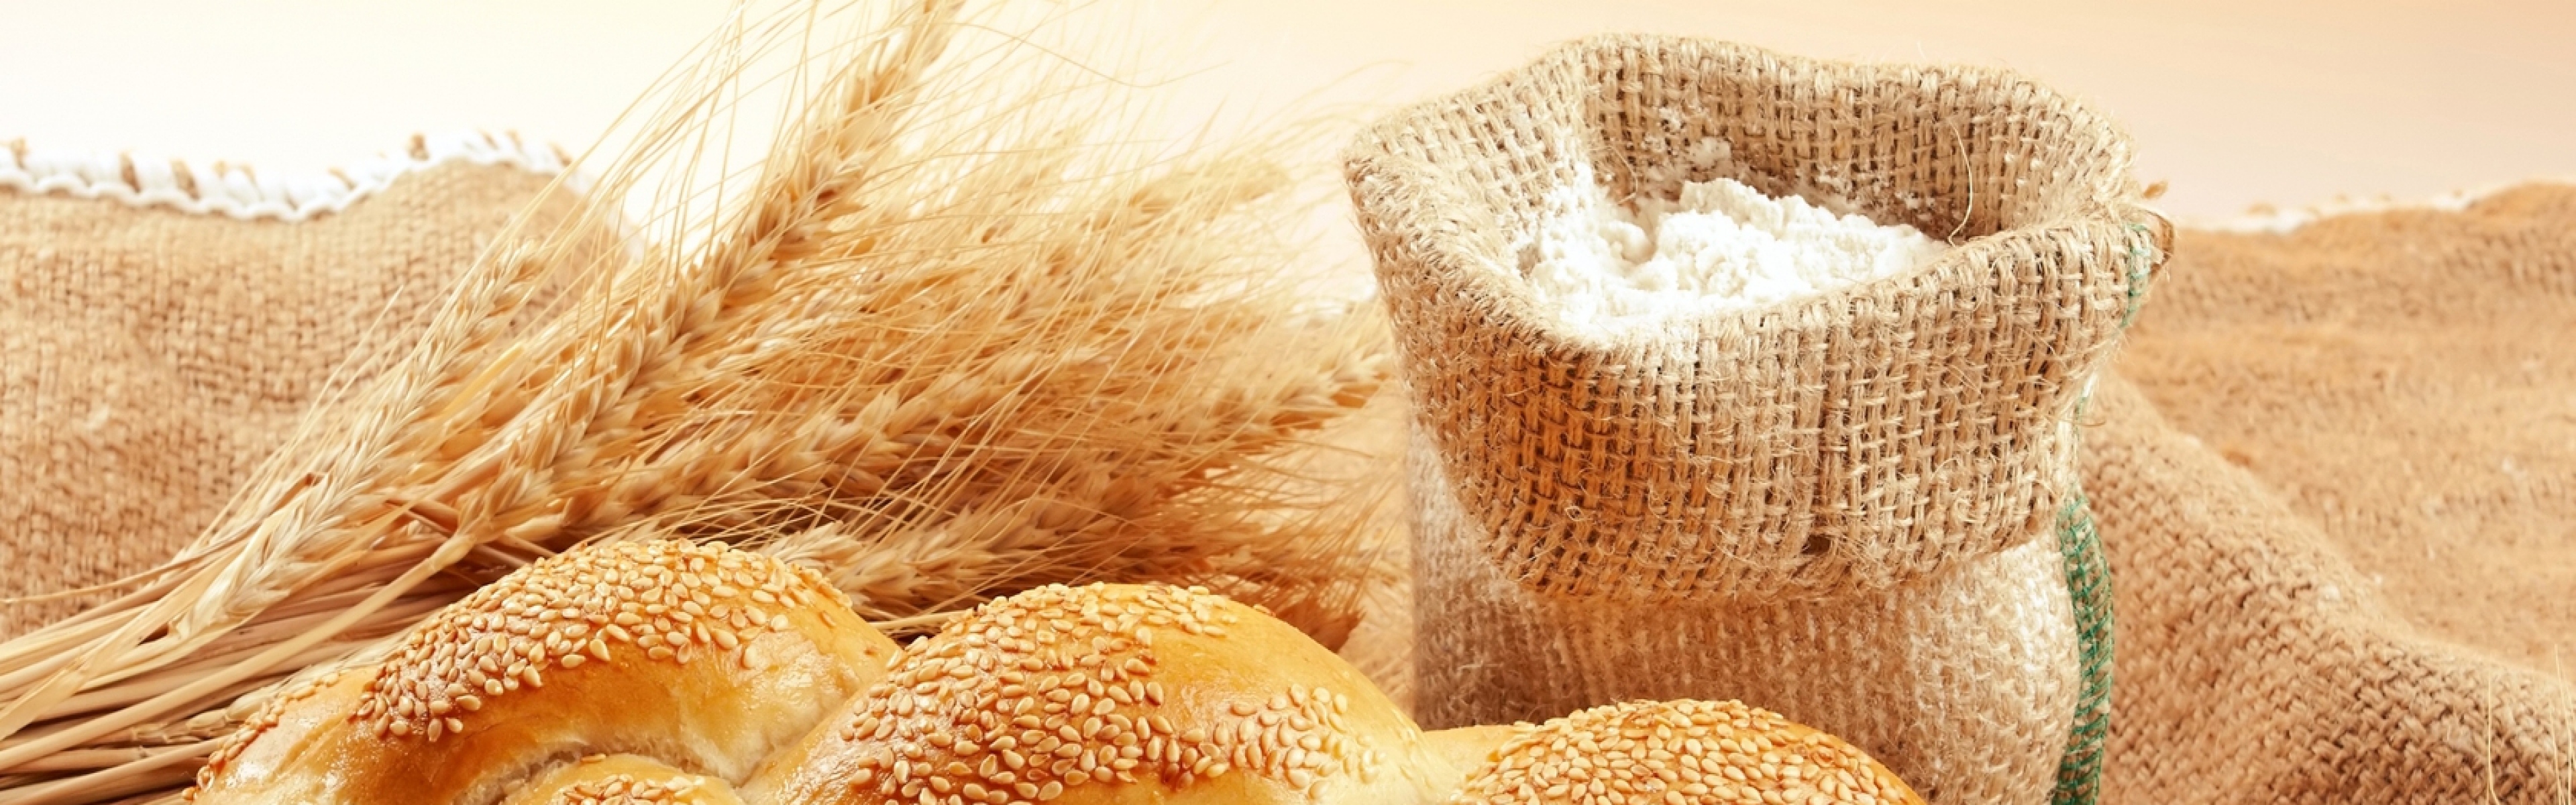 Wallpaper Bread Sesame Bag Flour Grain Wheat